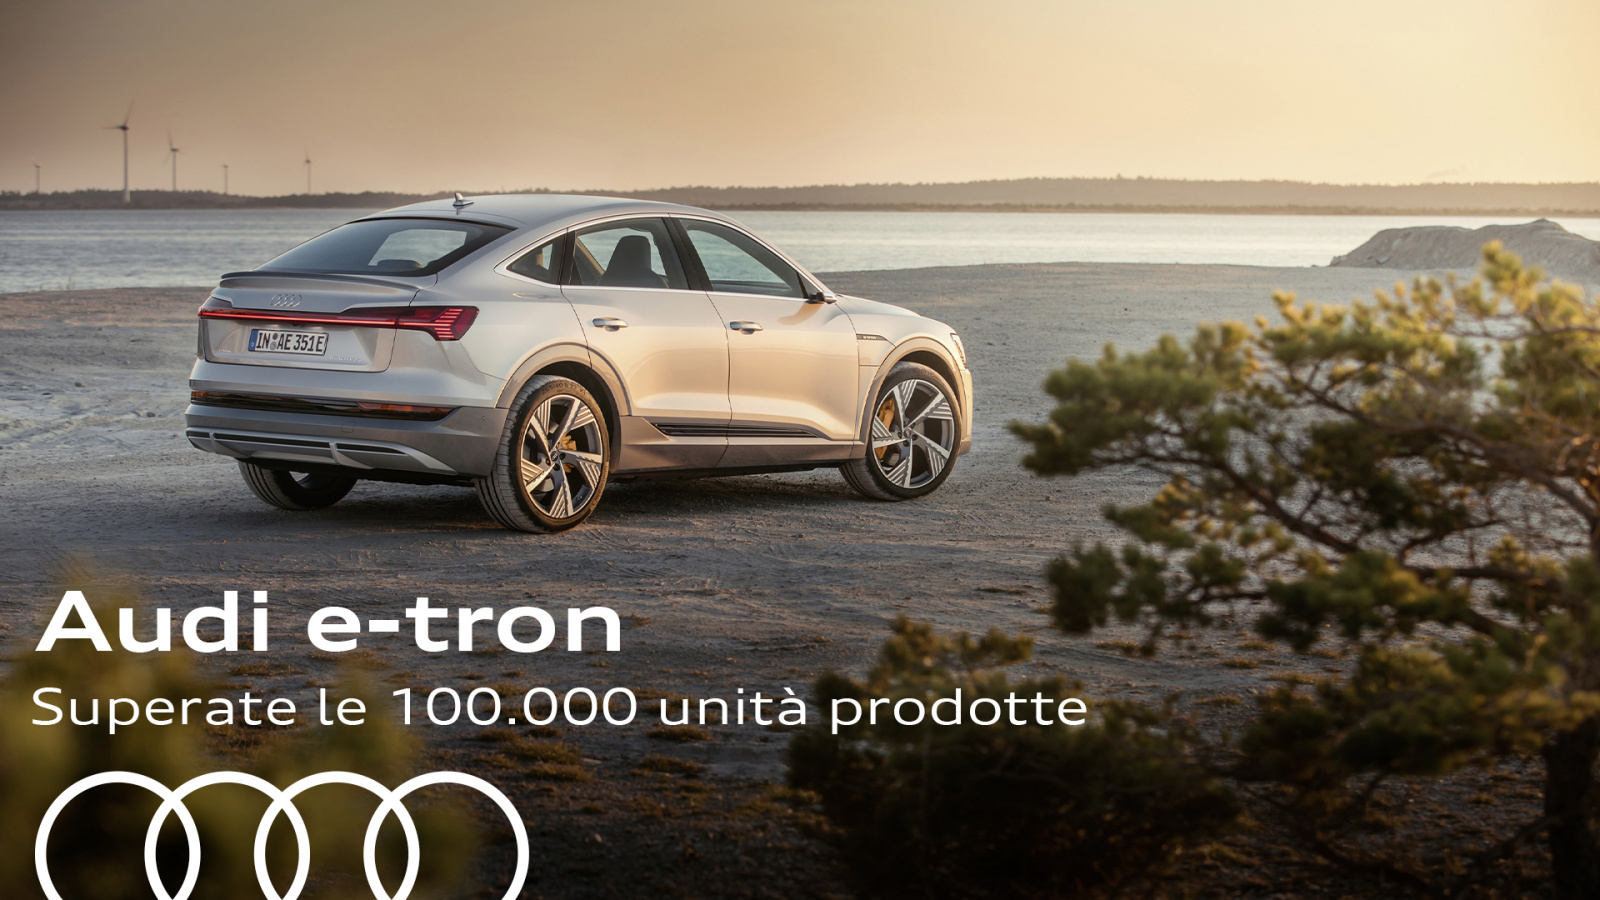 Audi e-tron, lo stabilimento di Bruxelles ha superato 100.000 unità prodotte